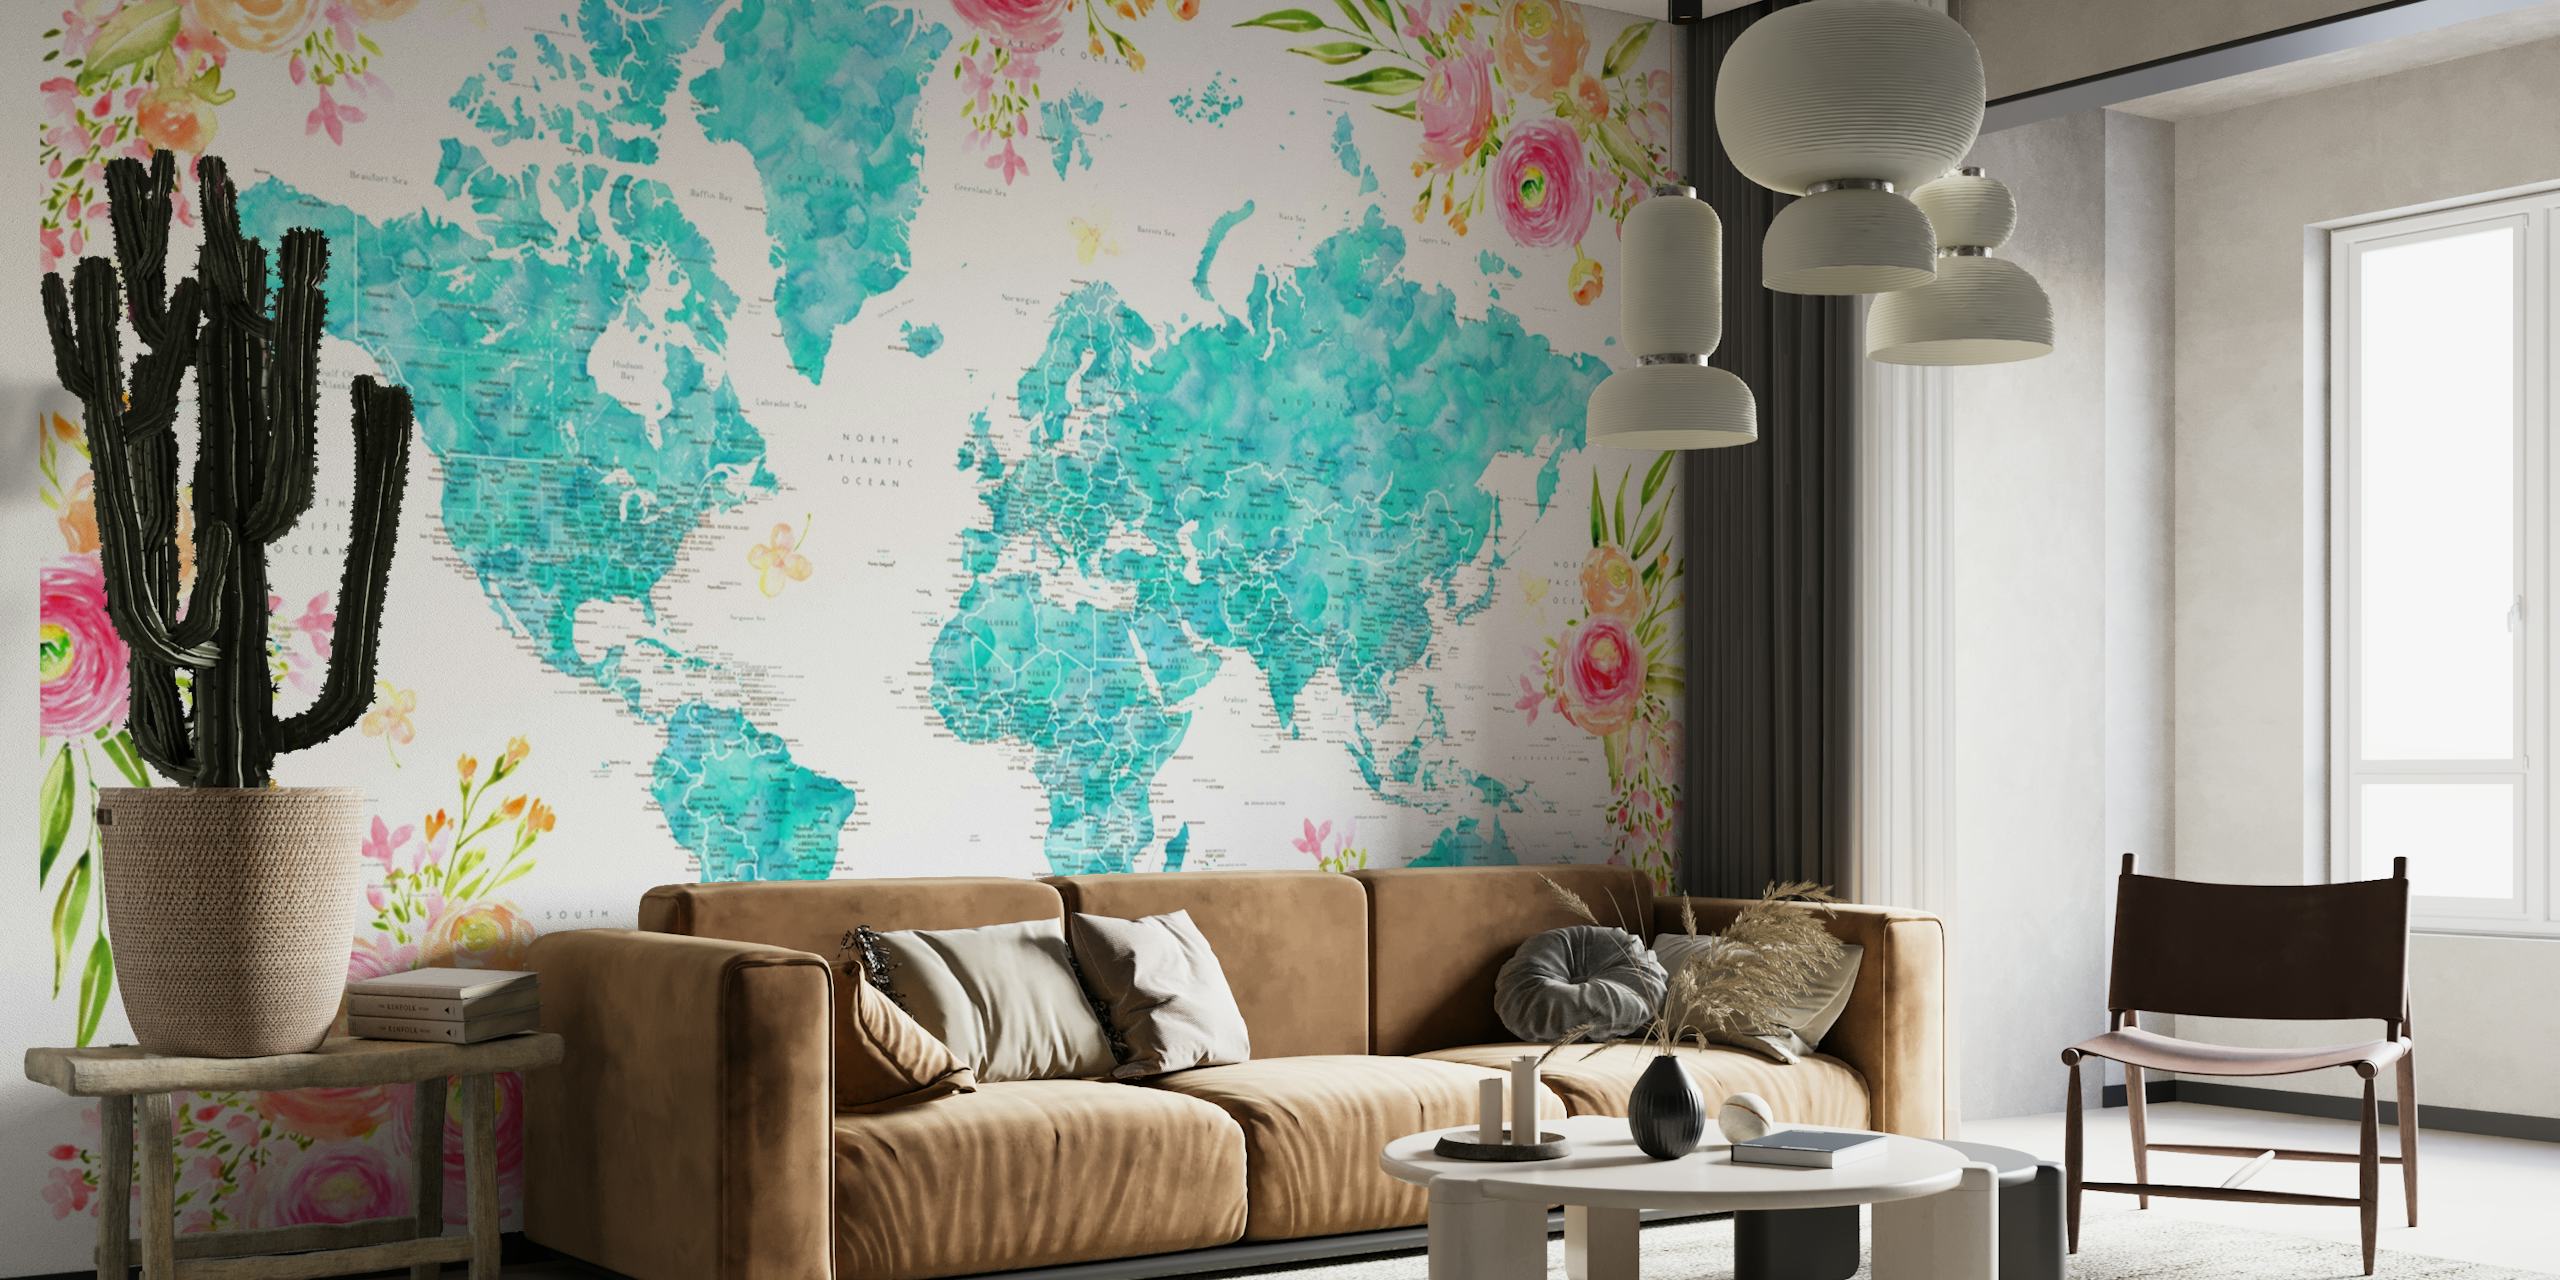 Detaljerad världskarta med blomkanter i turkos och pastellfärger på en väggmålning.